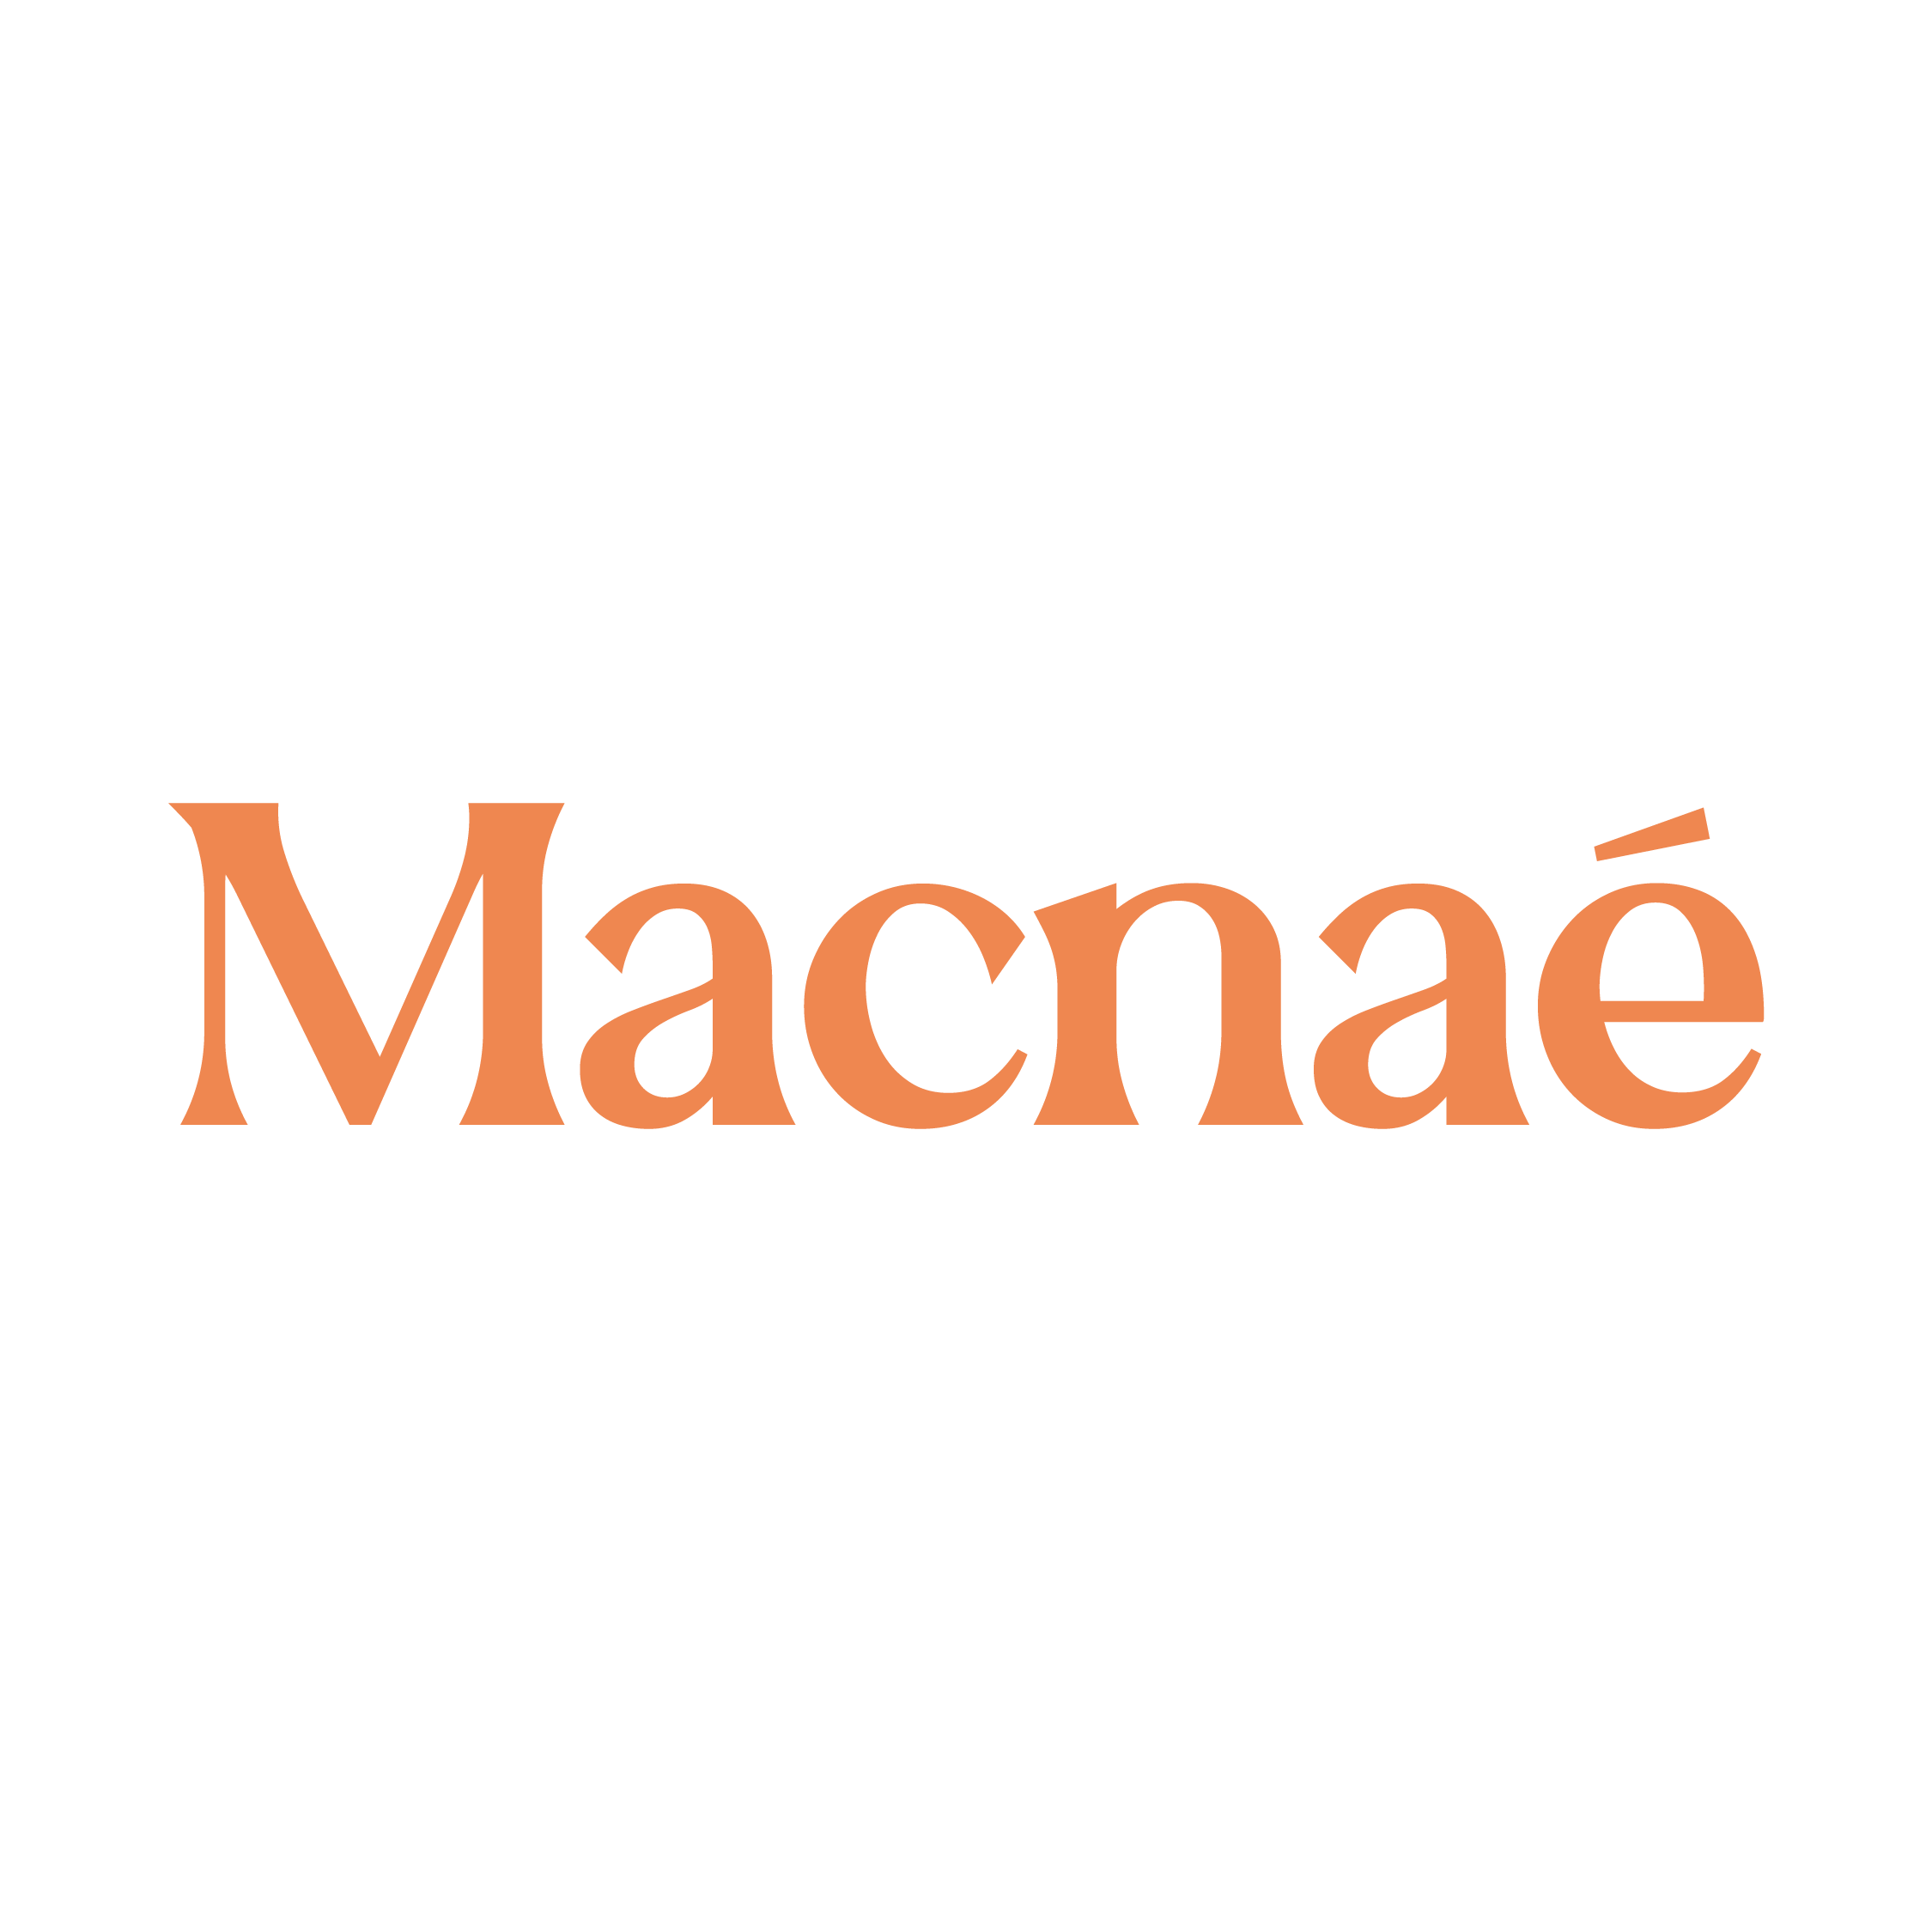 Macnae